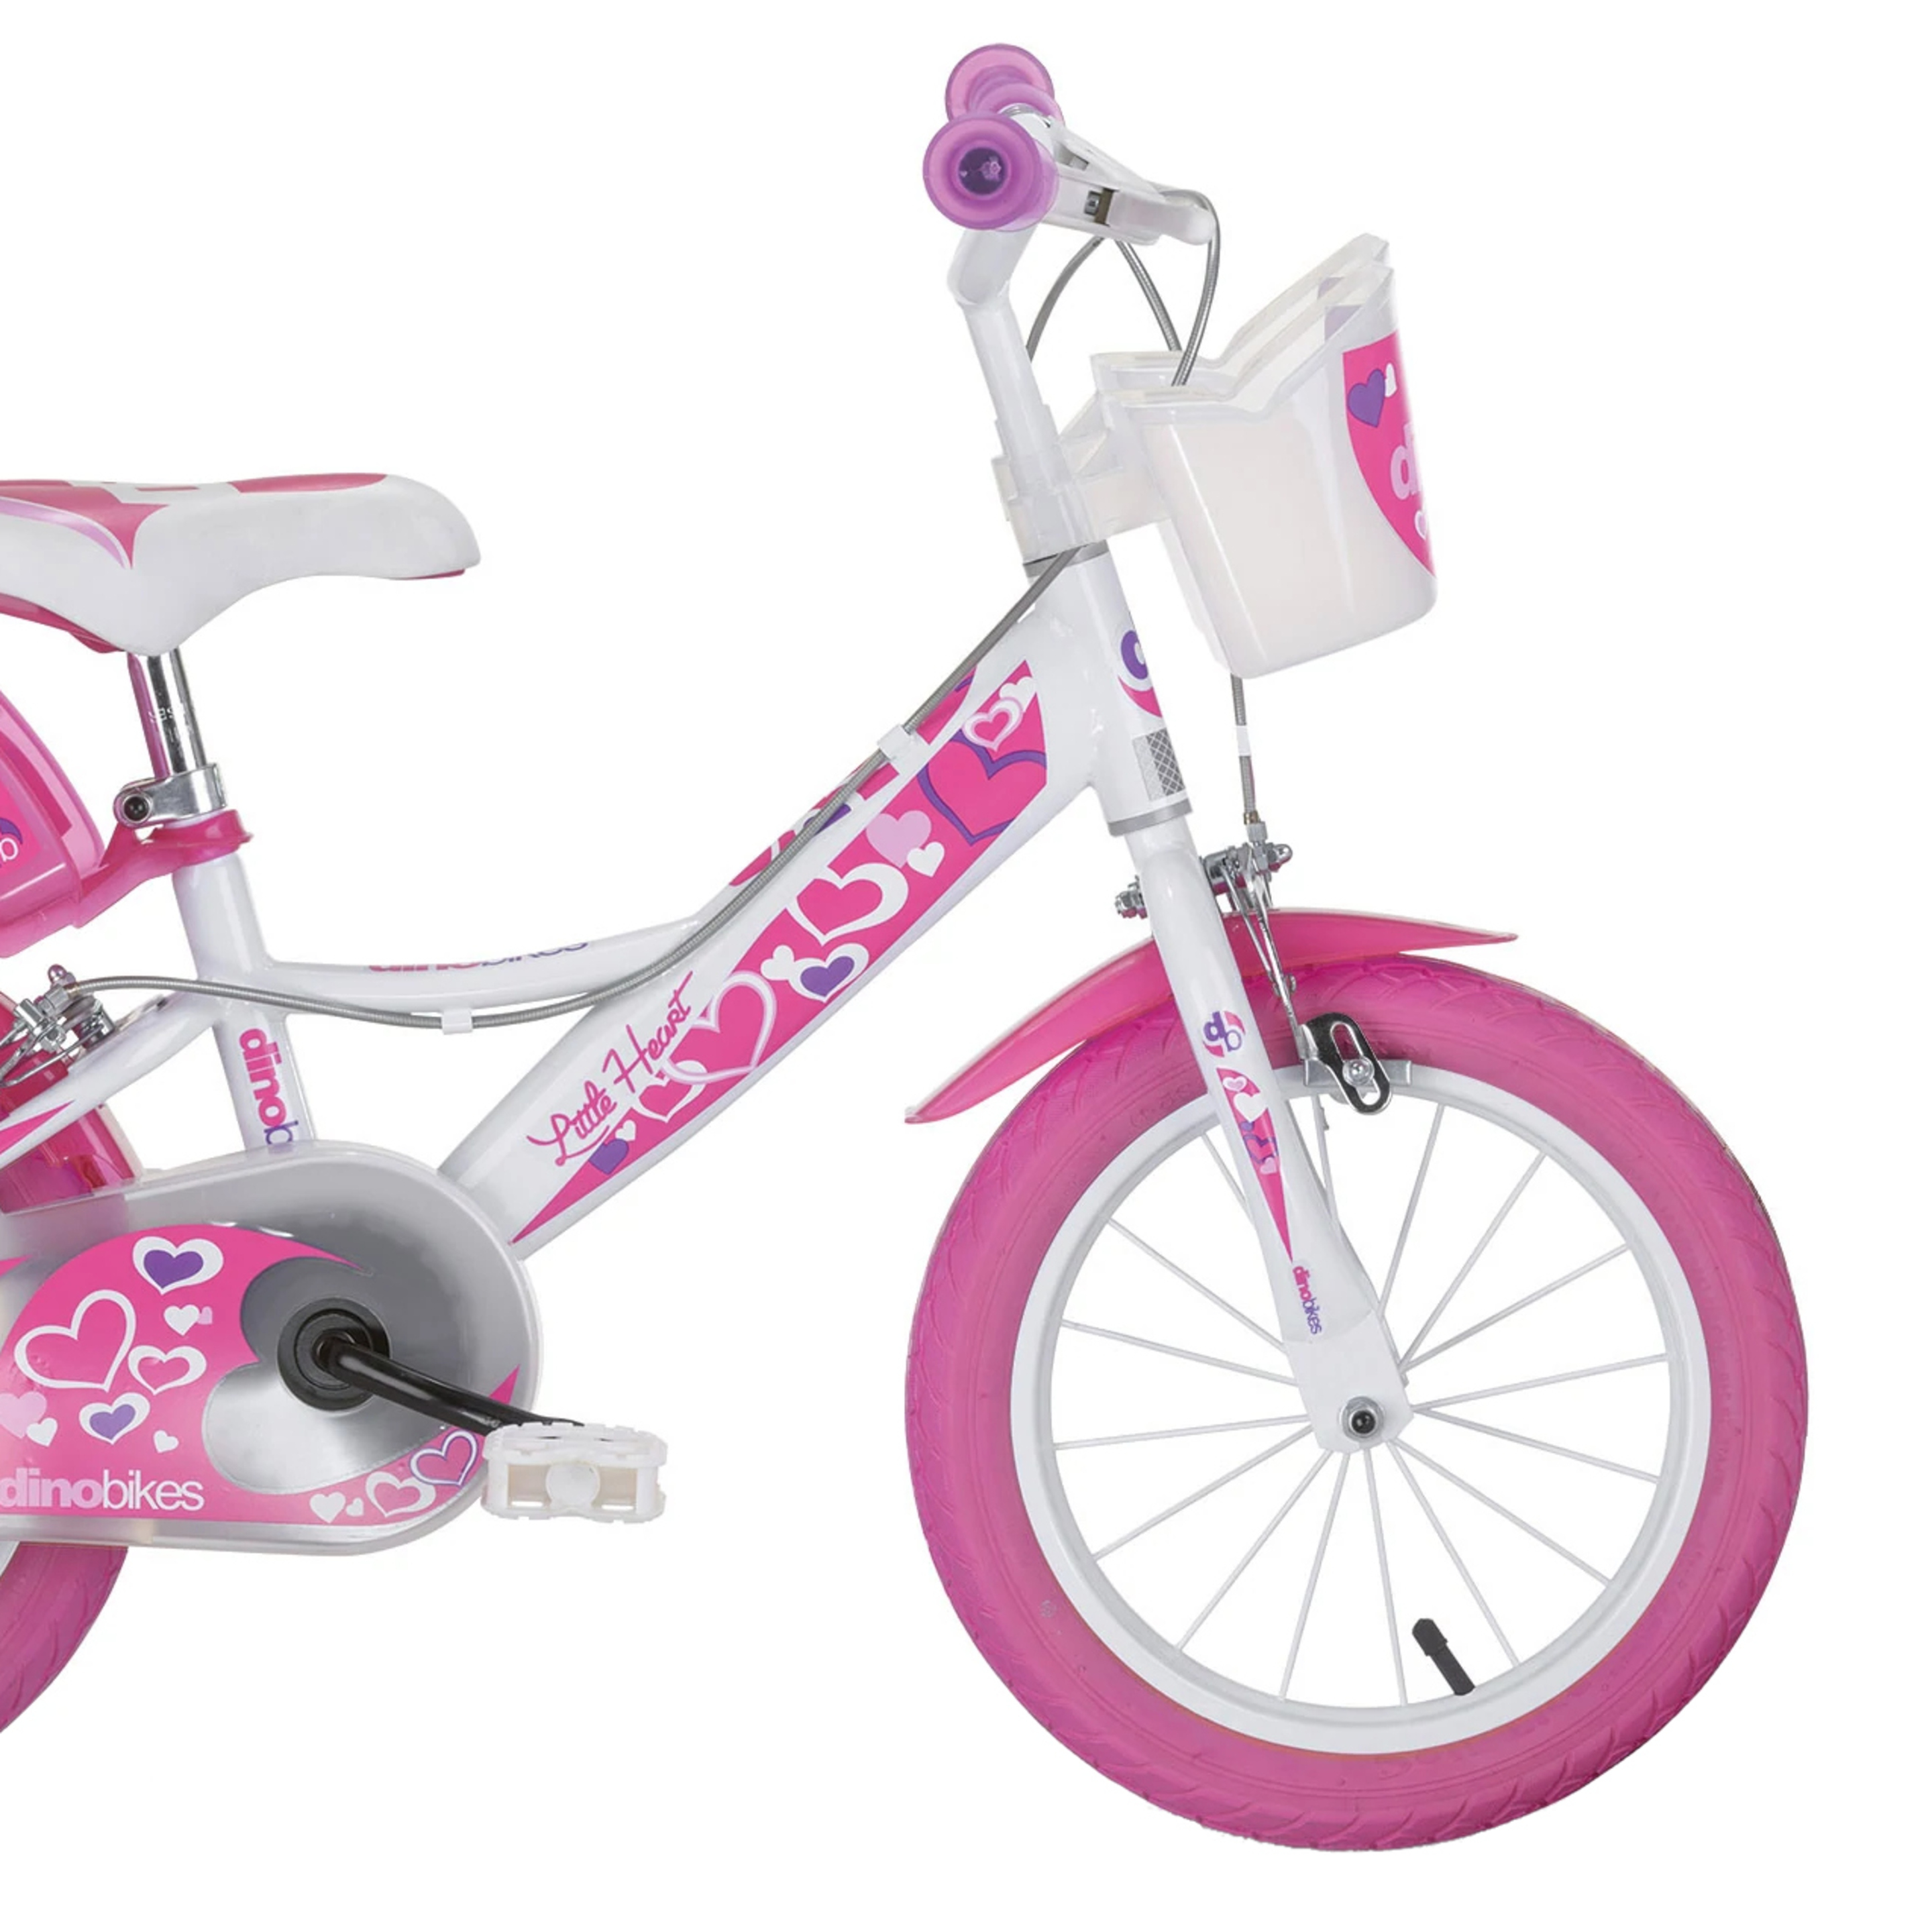 Bicicleta Criança Hearts 16 Polegadas 5-7 Anos